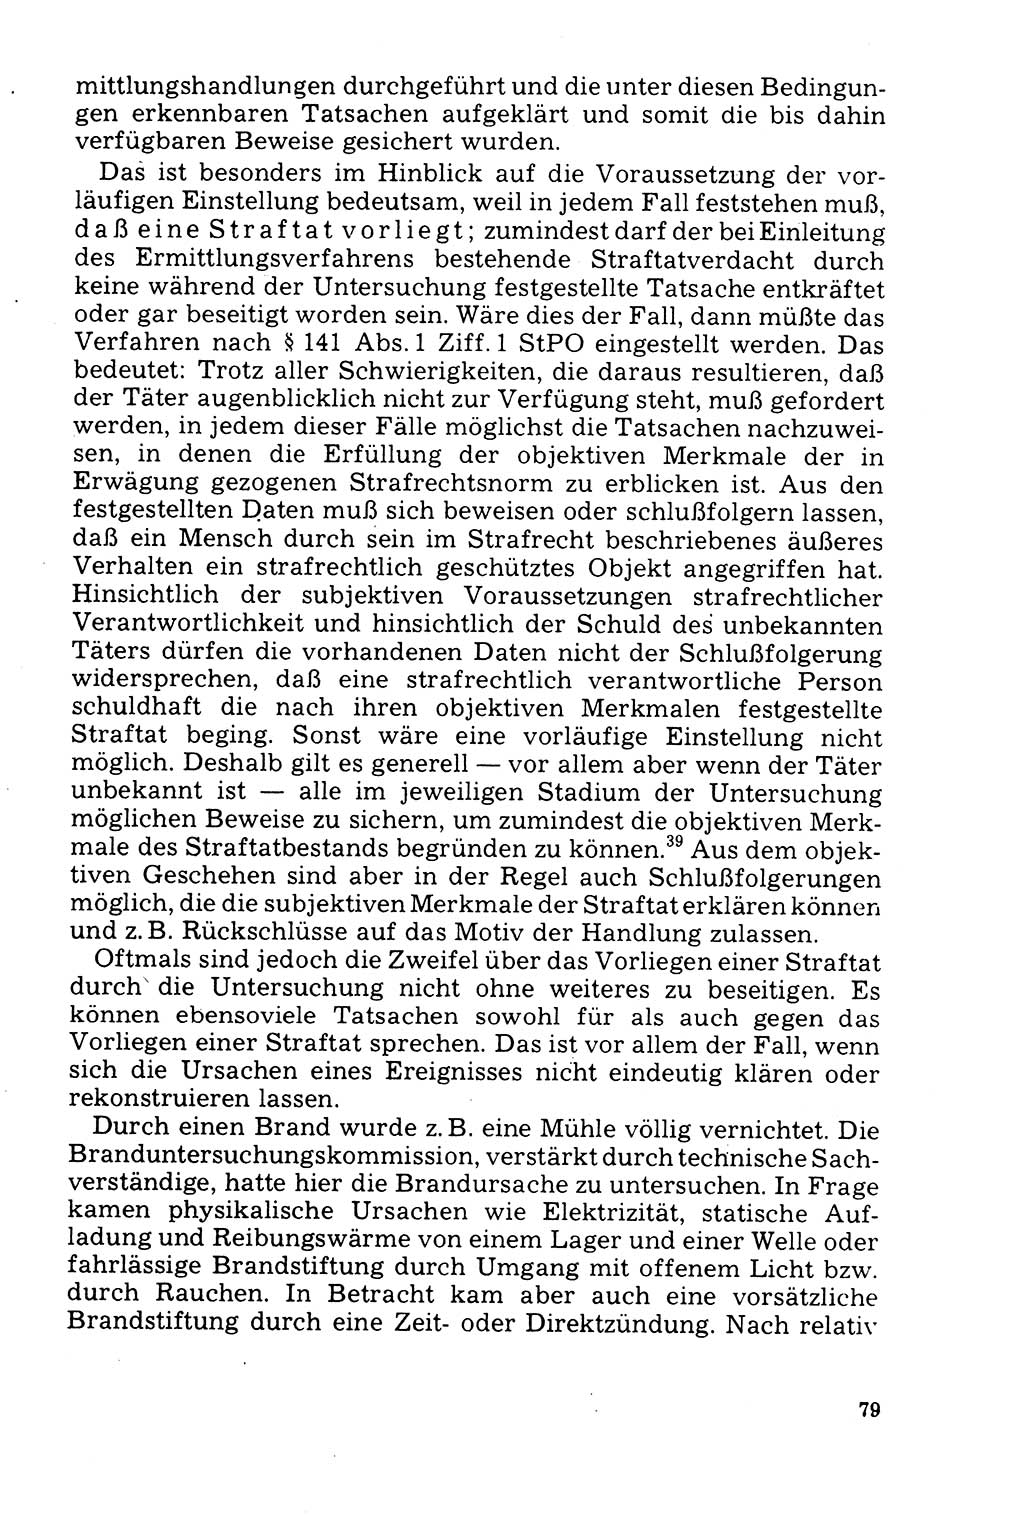 Der Abschluß des Ermittlungsverfahrens [Deutsche Demokratische Republik (DDR)] 1978, Seite 79 (Abschl. EV DDR 1978, S. 79)